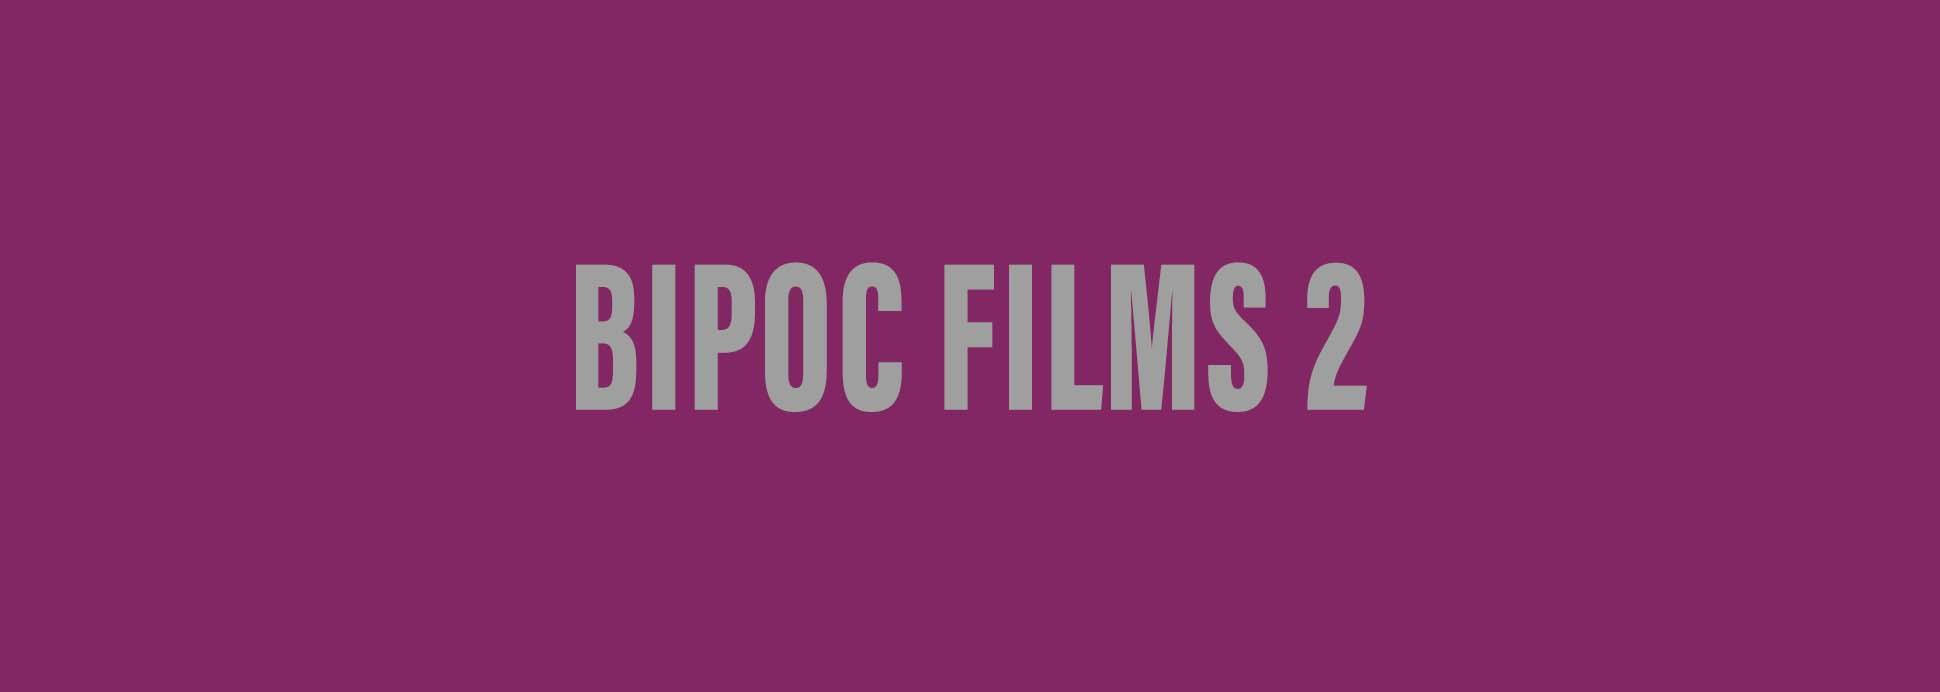 BIPOC Films 2